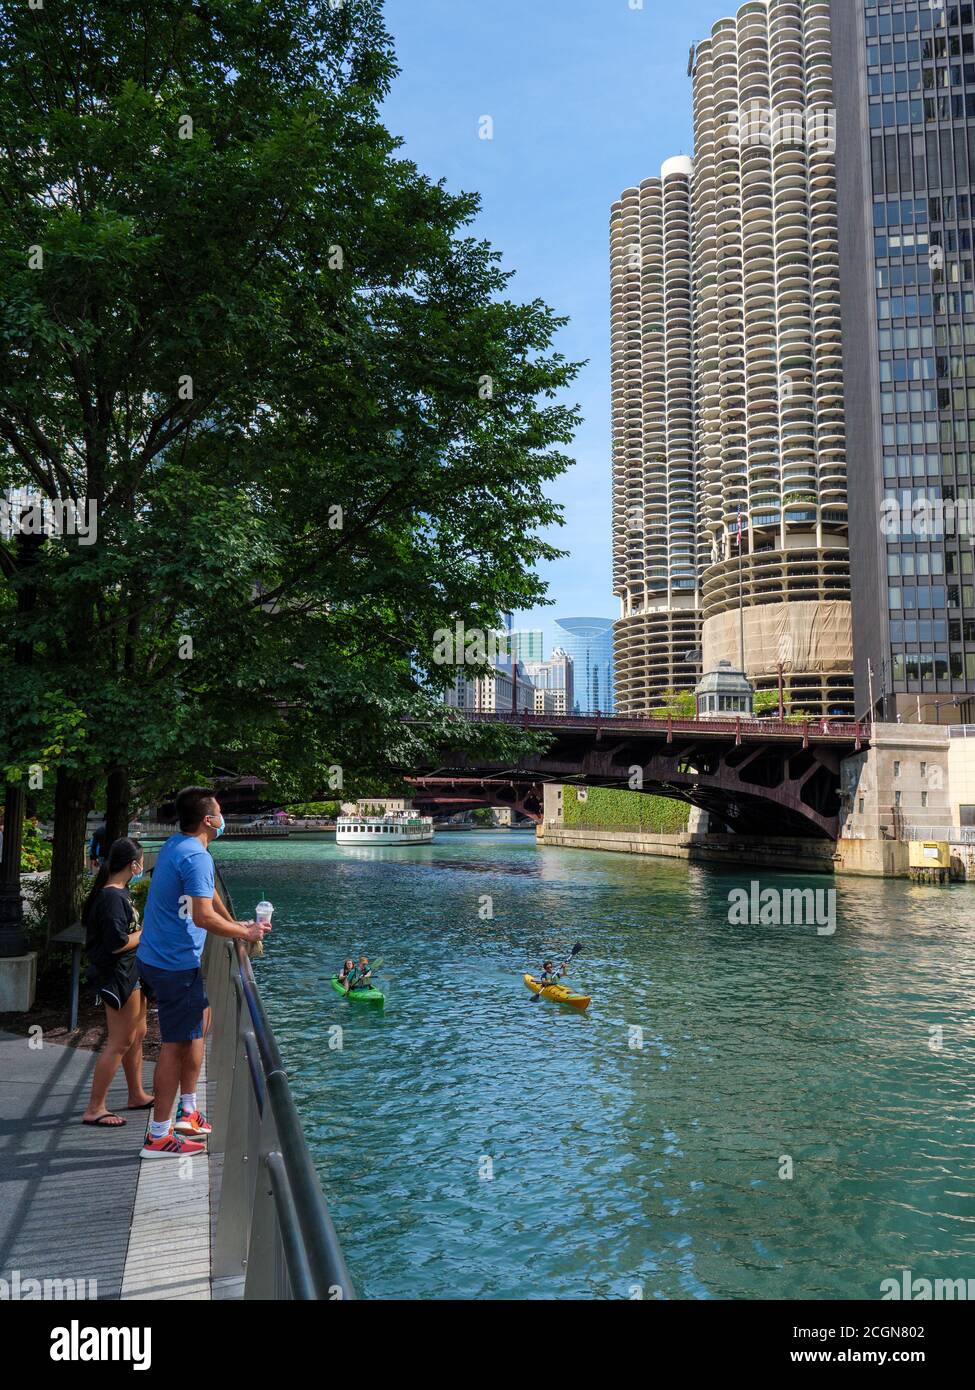 Homme portant un masque de visage appréciant la vue de Chicago Riverwalk pendant la pandémie de COVID, kayakistes sur la rivière Chicago. Banque D'Images